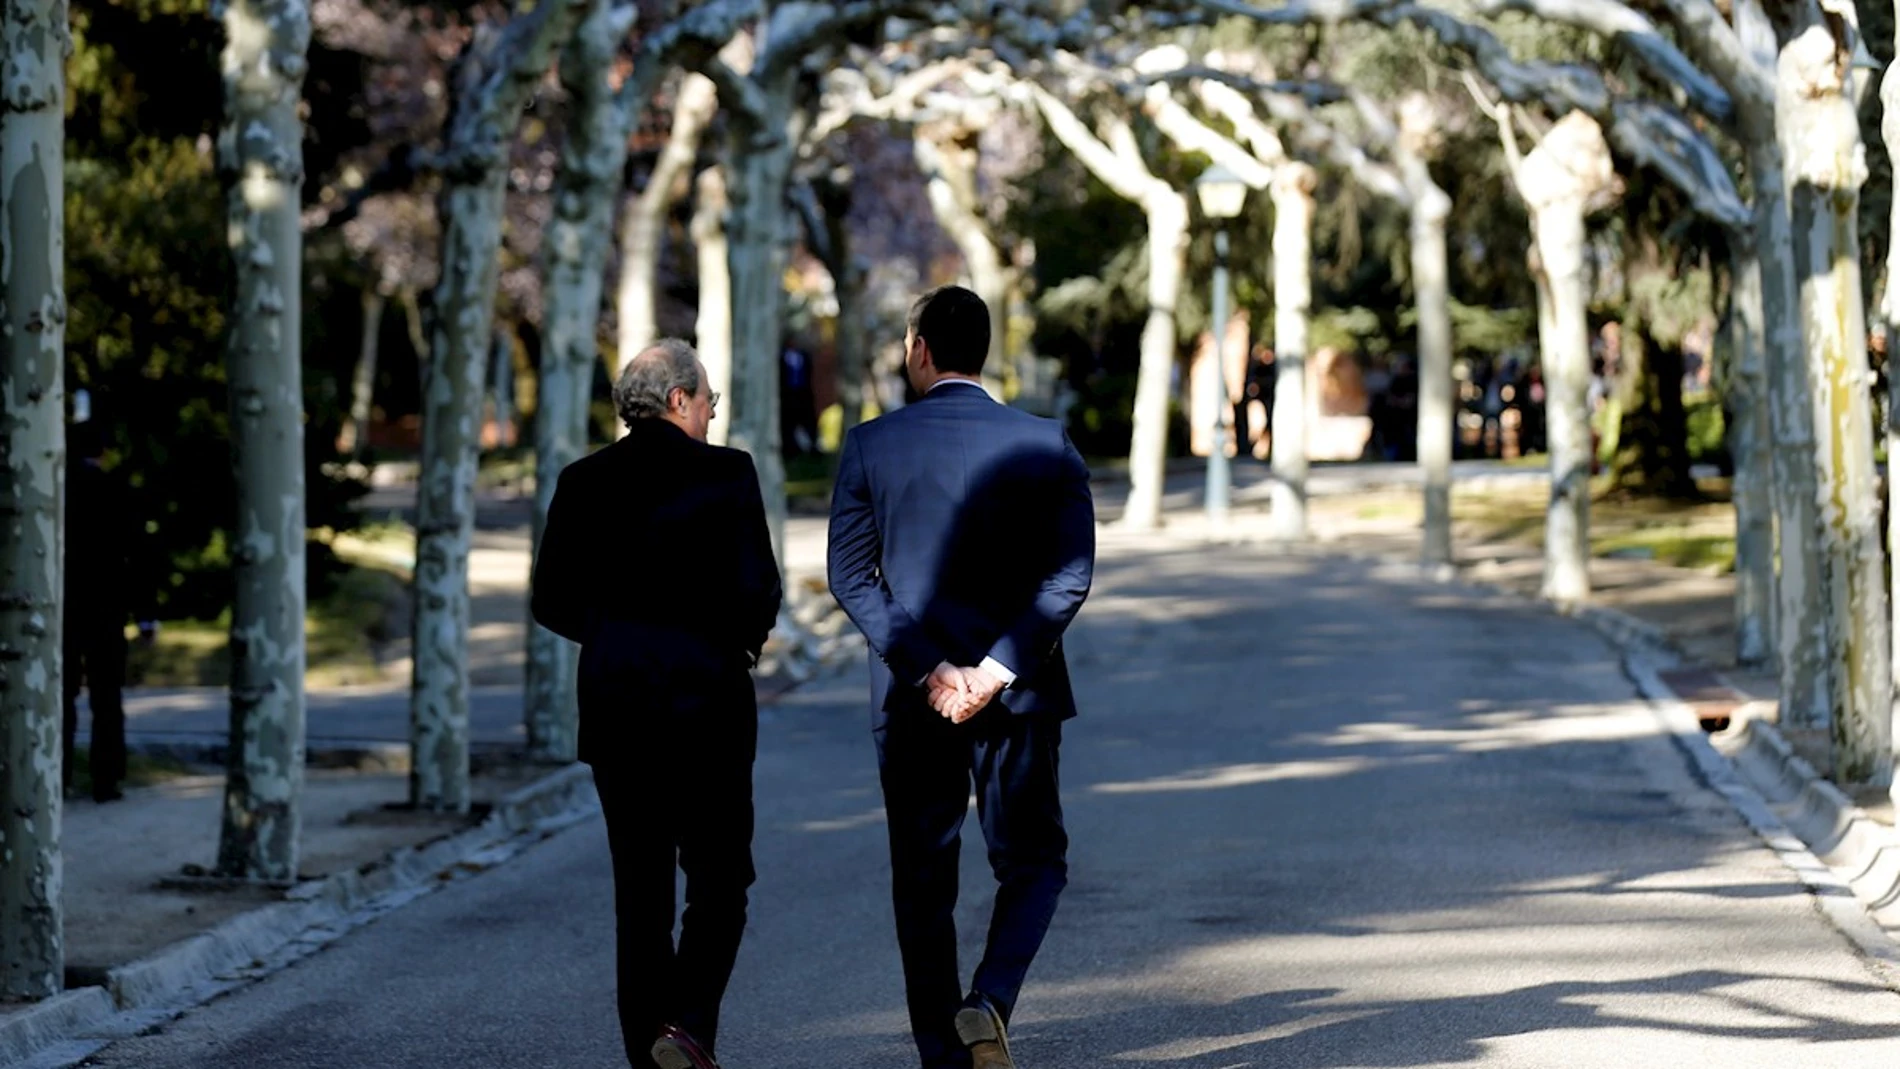 Pedro Sánchez y Quim Torra pasean por los jardines de Moncloa